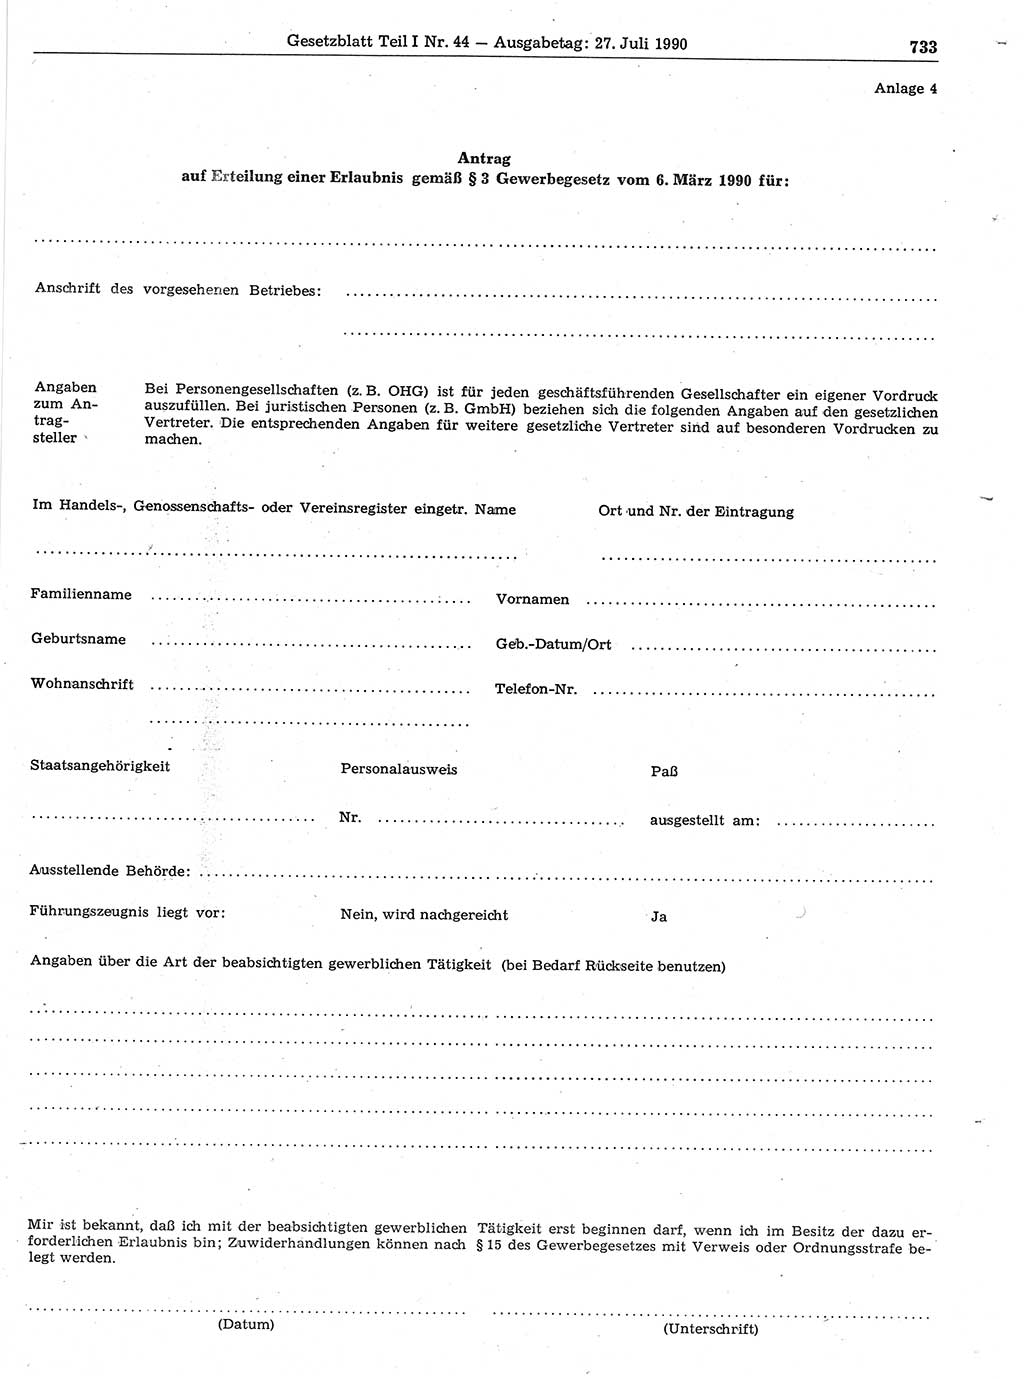 Gesetzblatt (GBl.) der Deutschen Demokratischen Republik (DDR) Teil Ⅰ 1990, Seite 733 (GBl. DDR Ⅰ 1990, S. 733)